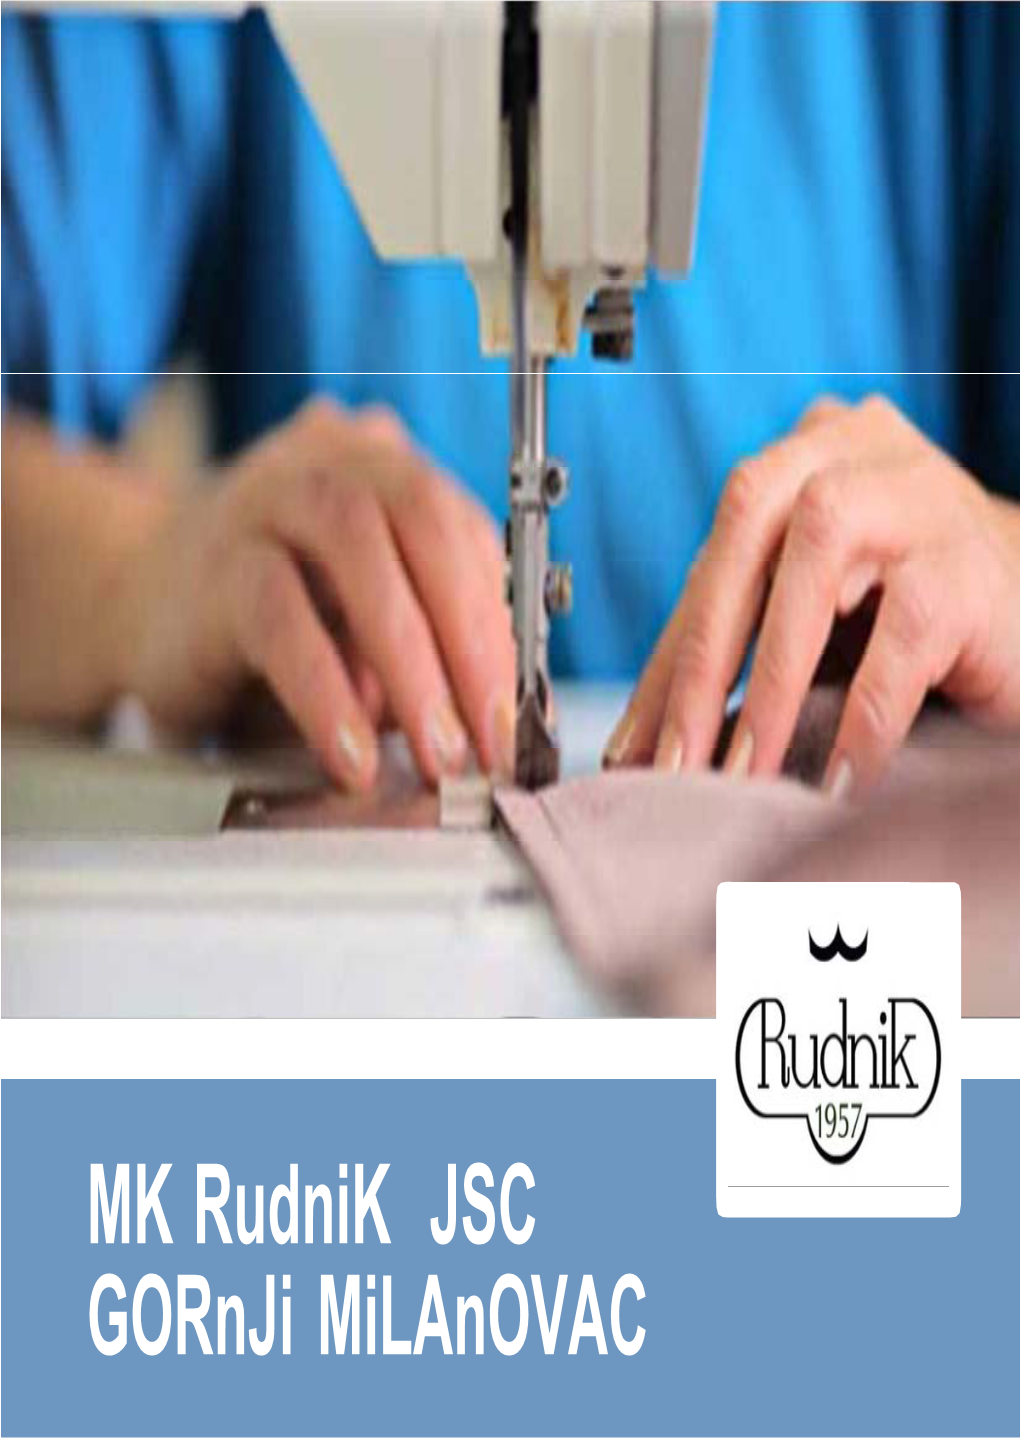 MK Rudnik JSC Gornji Milanovac General Information